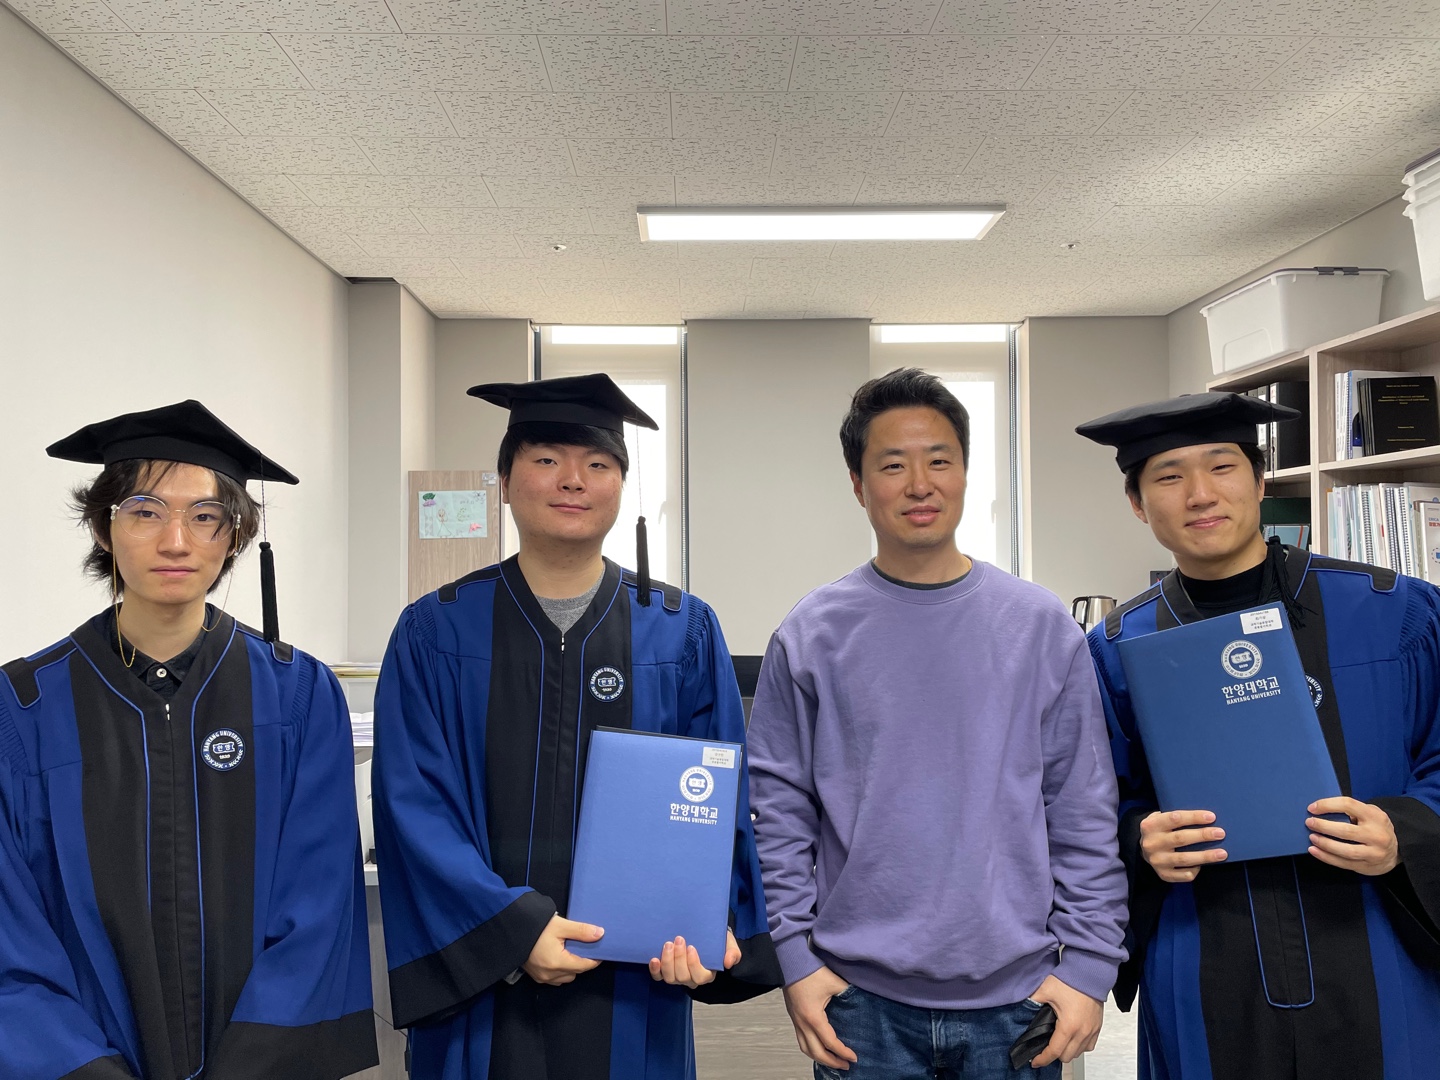 Commencement (graduation ceremony)